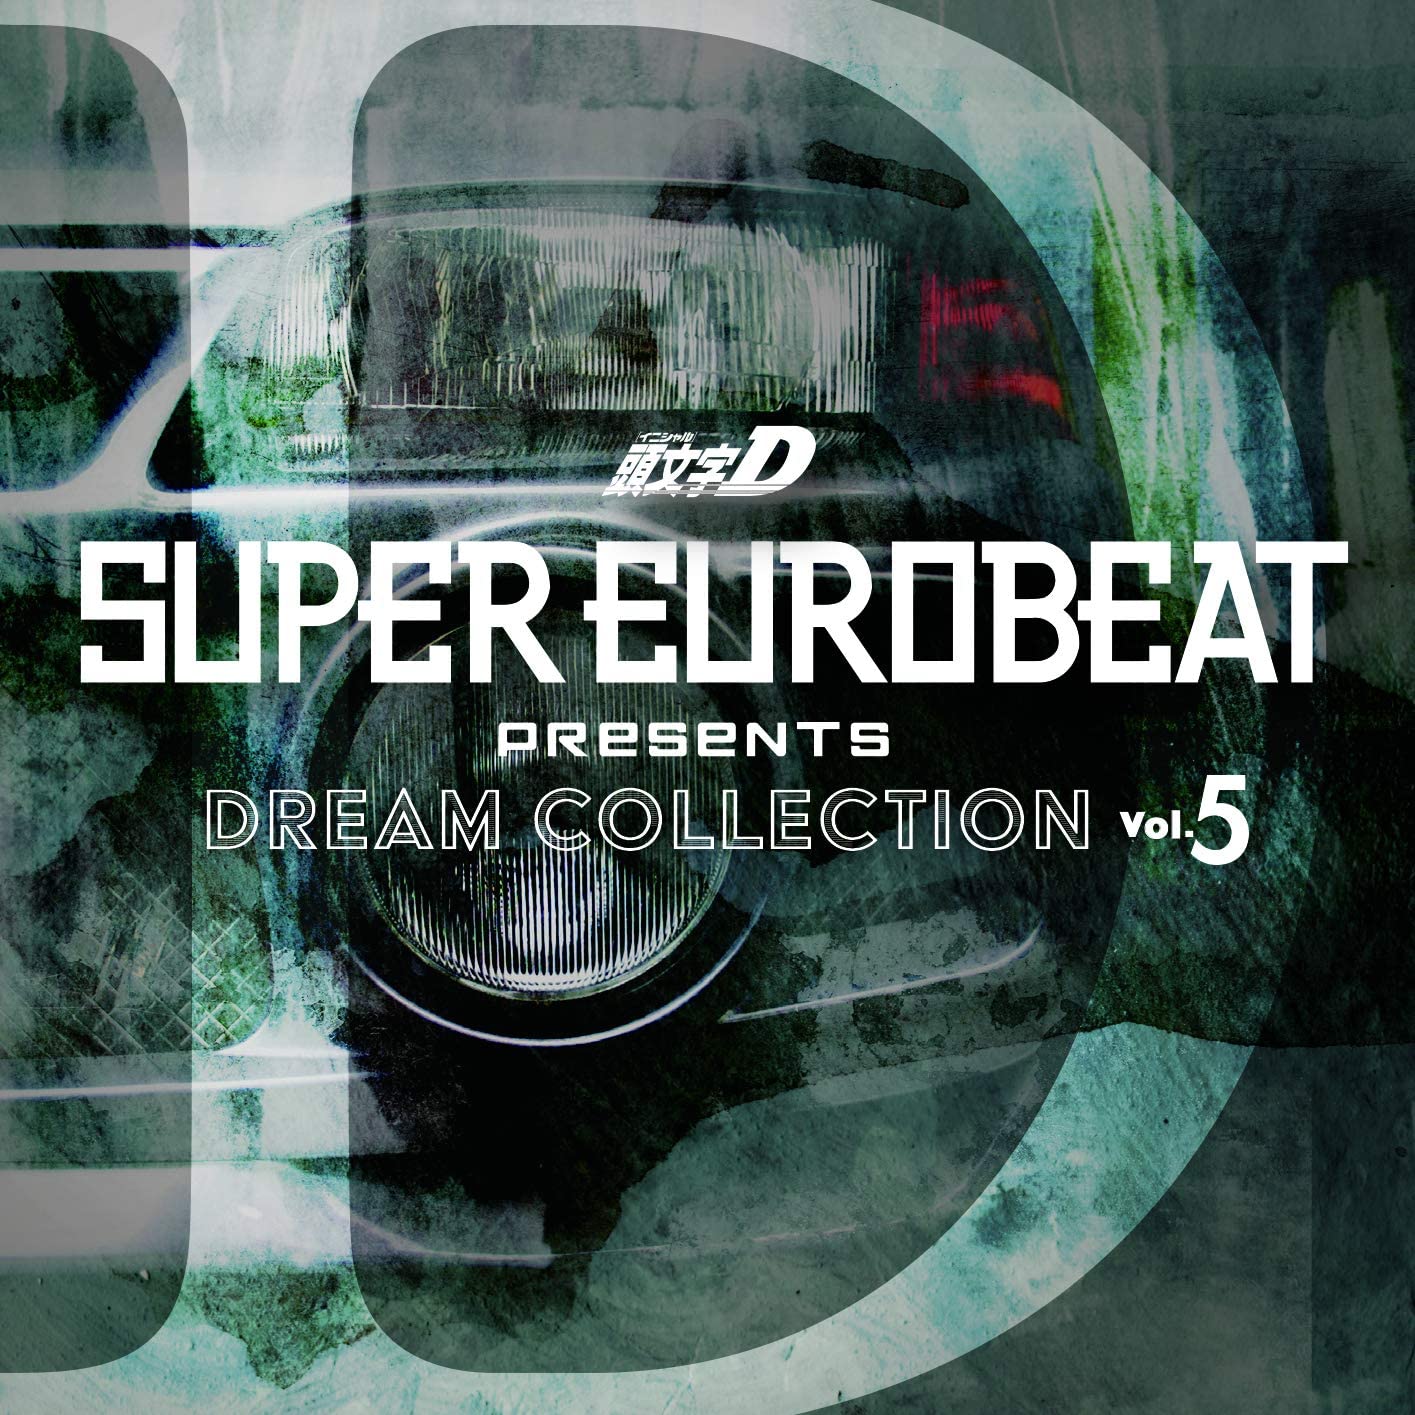 Super Eurobeat Presents Initial D Dream Collection Vol 5 Download Mp3 3k Flac 24 48 Hi Res